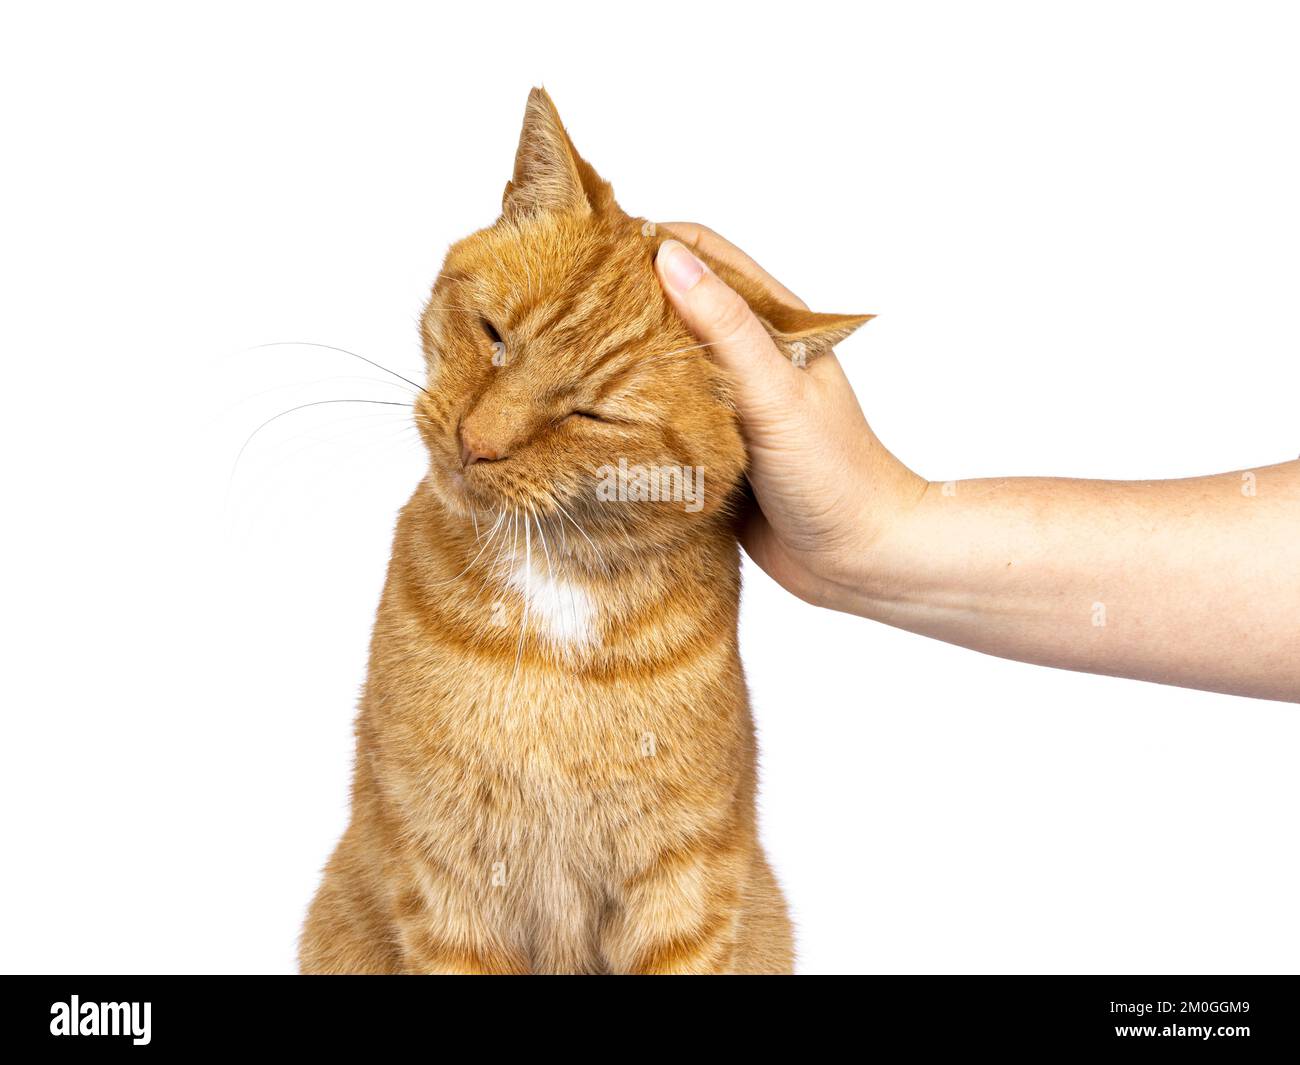 Photo de la tête d'un chat de maison senior au gingembre masculin, assis face à l'avant. La main humaine la petant sur la tête. Isolé sur un fond blanc. Banque D'Images